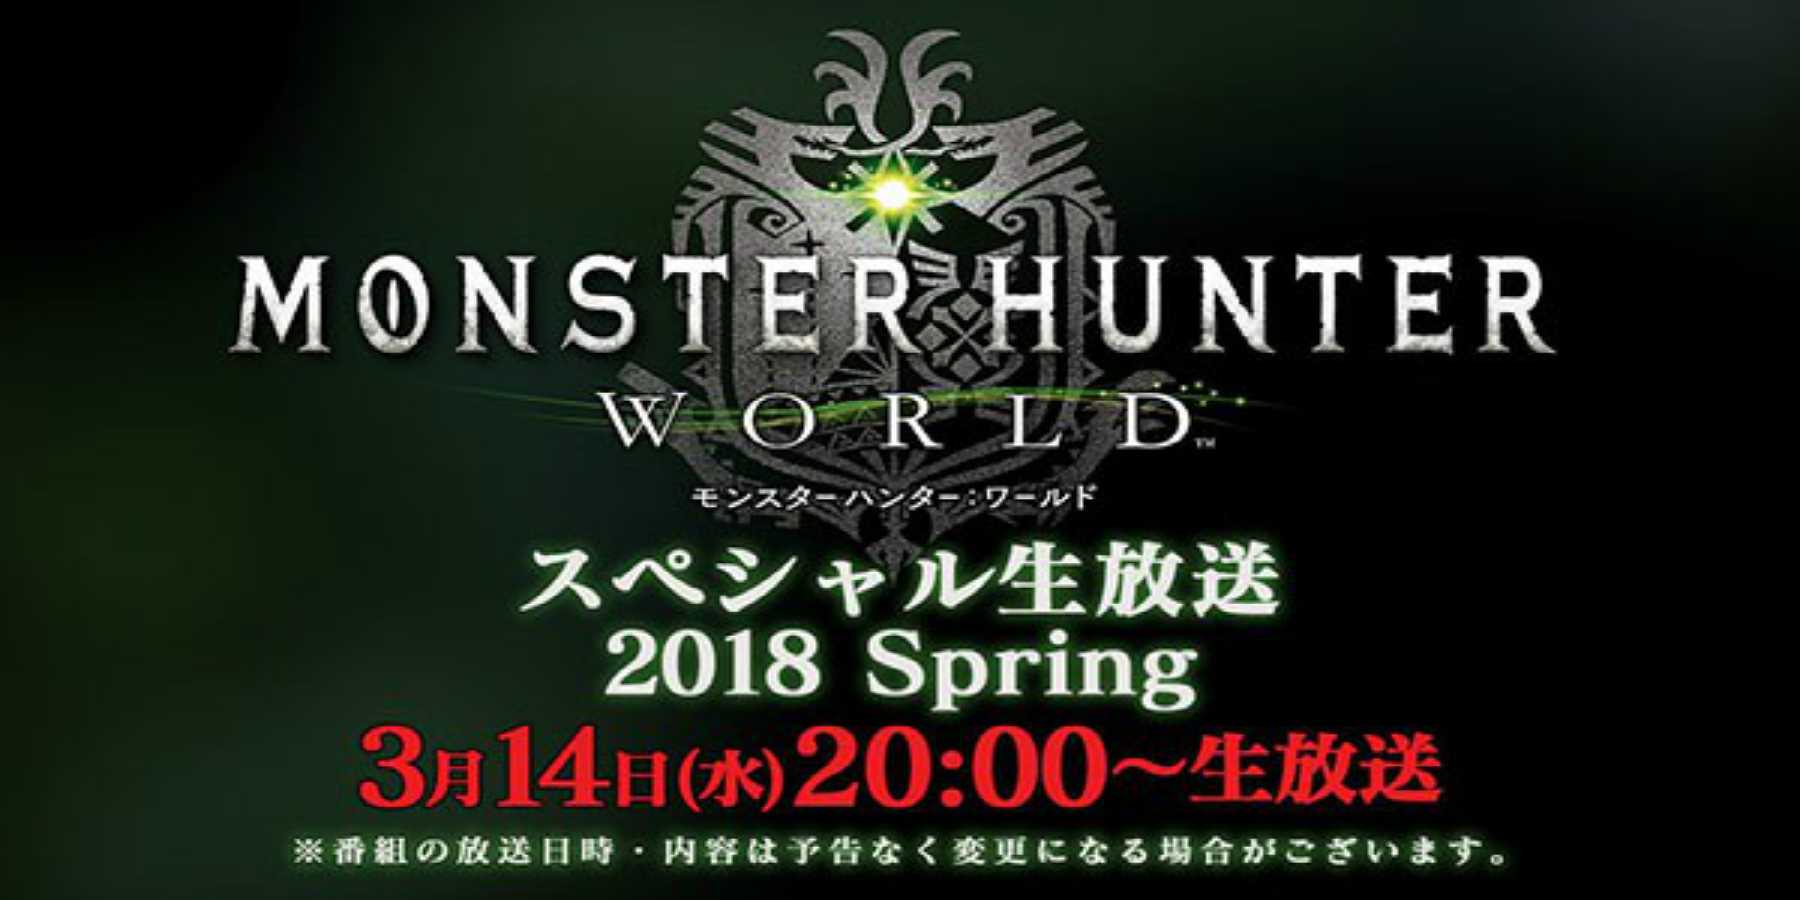 Monster Hunter: World tendrá emisión especial por primavera el 14 de marzo